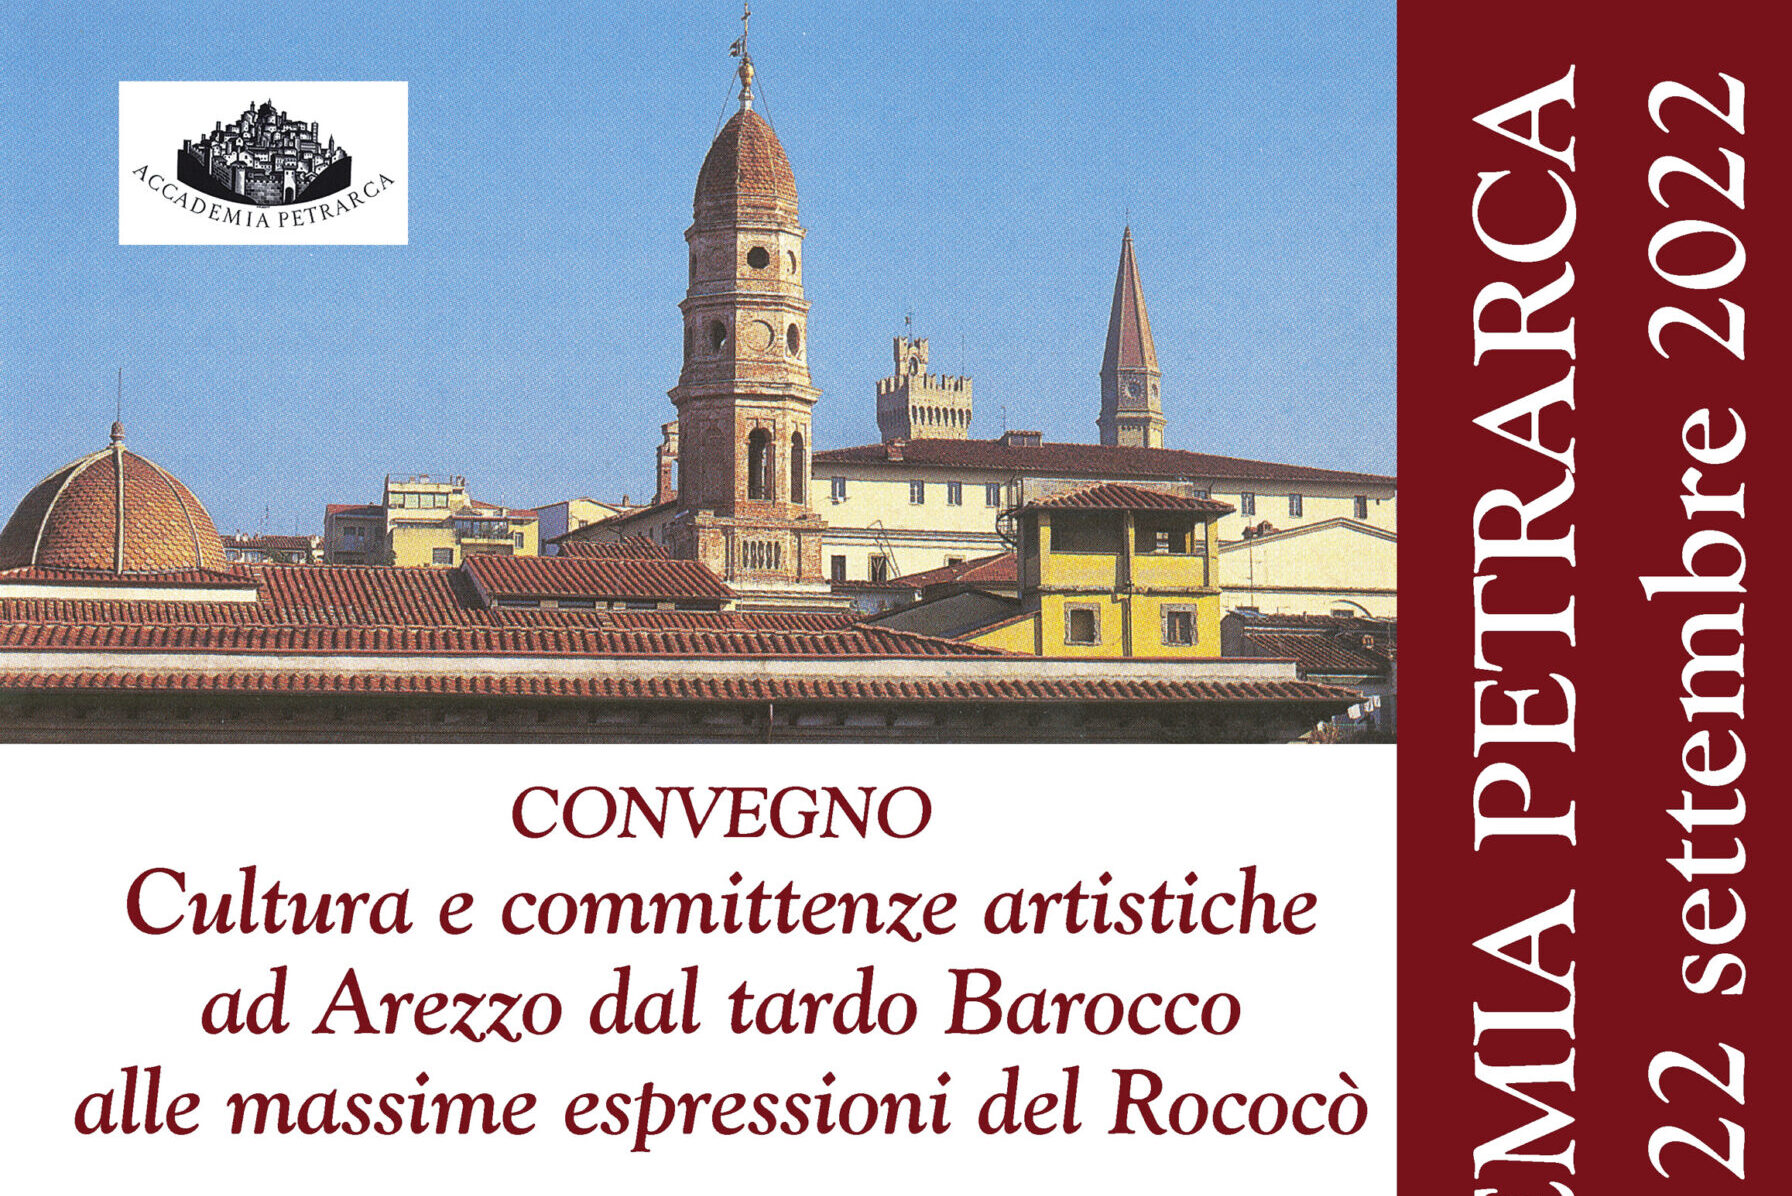 Dal tardo Barocco al Rococò: giovedì il convegno di studi presso la Casa del Petrarca